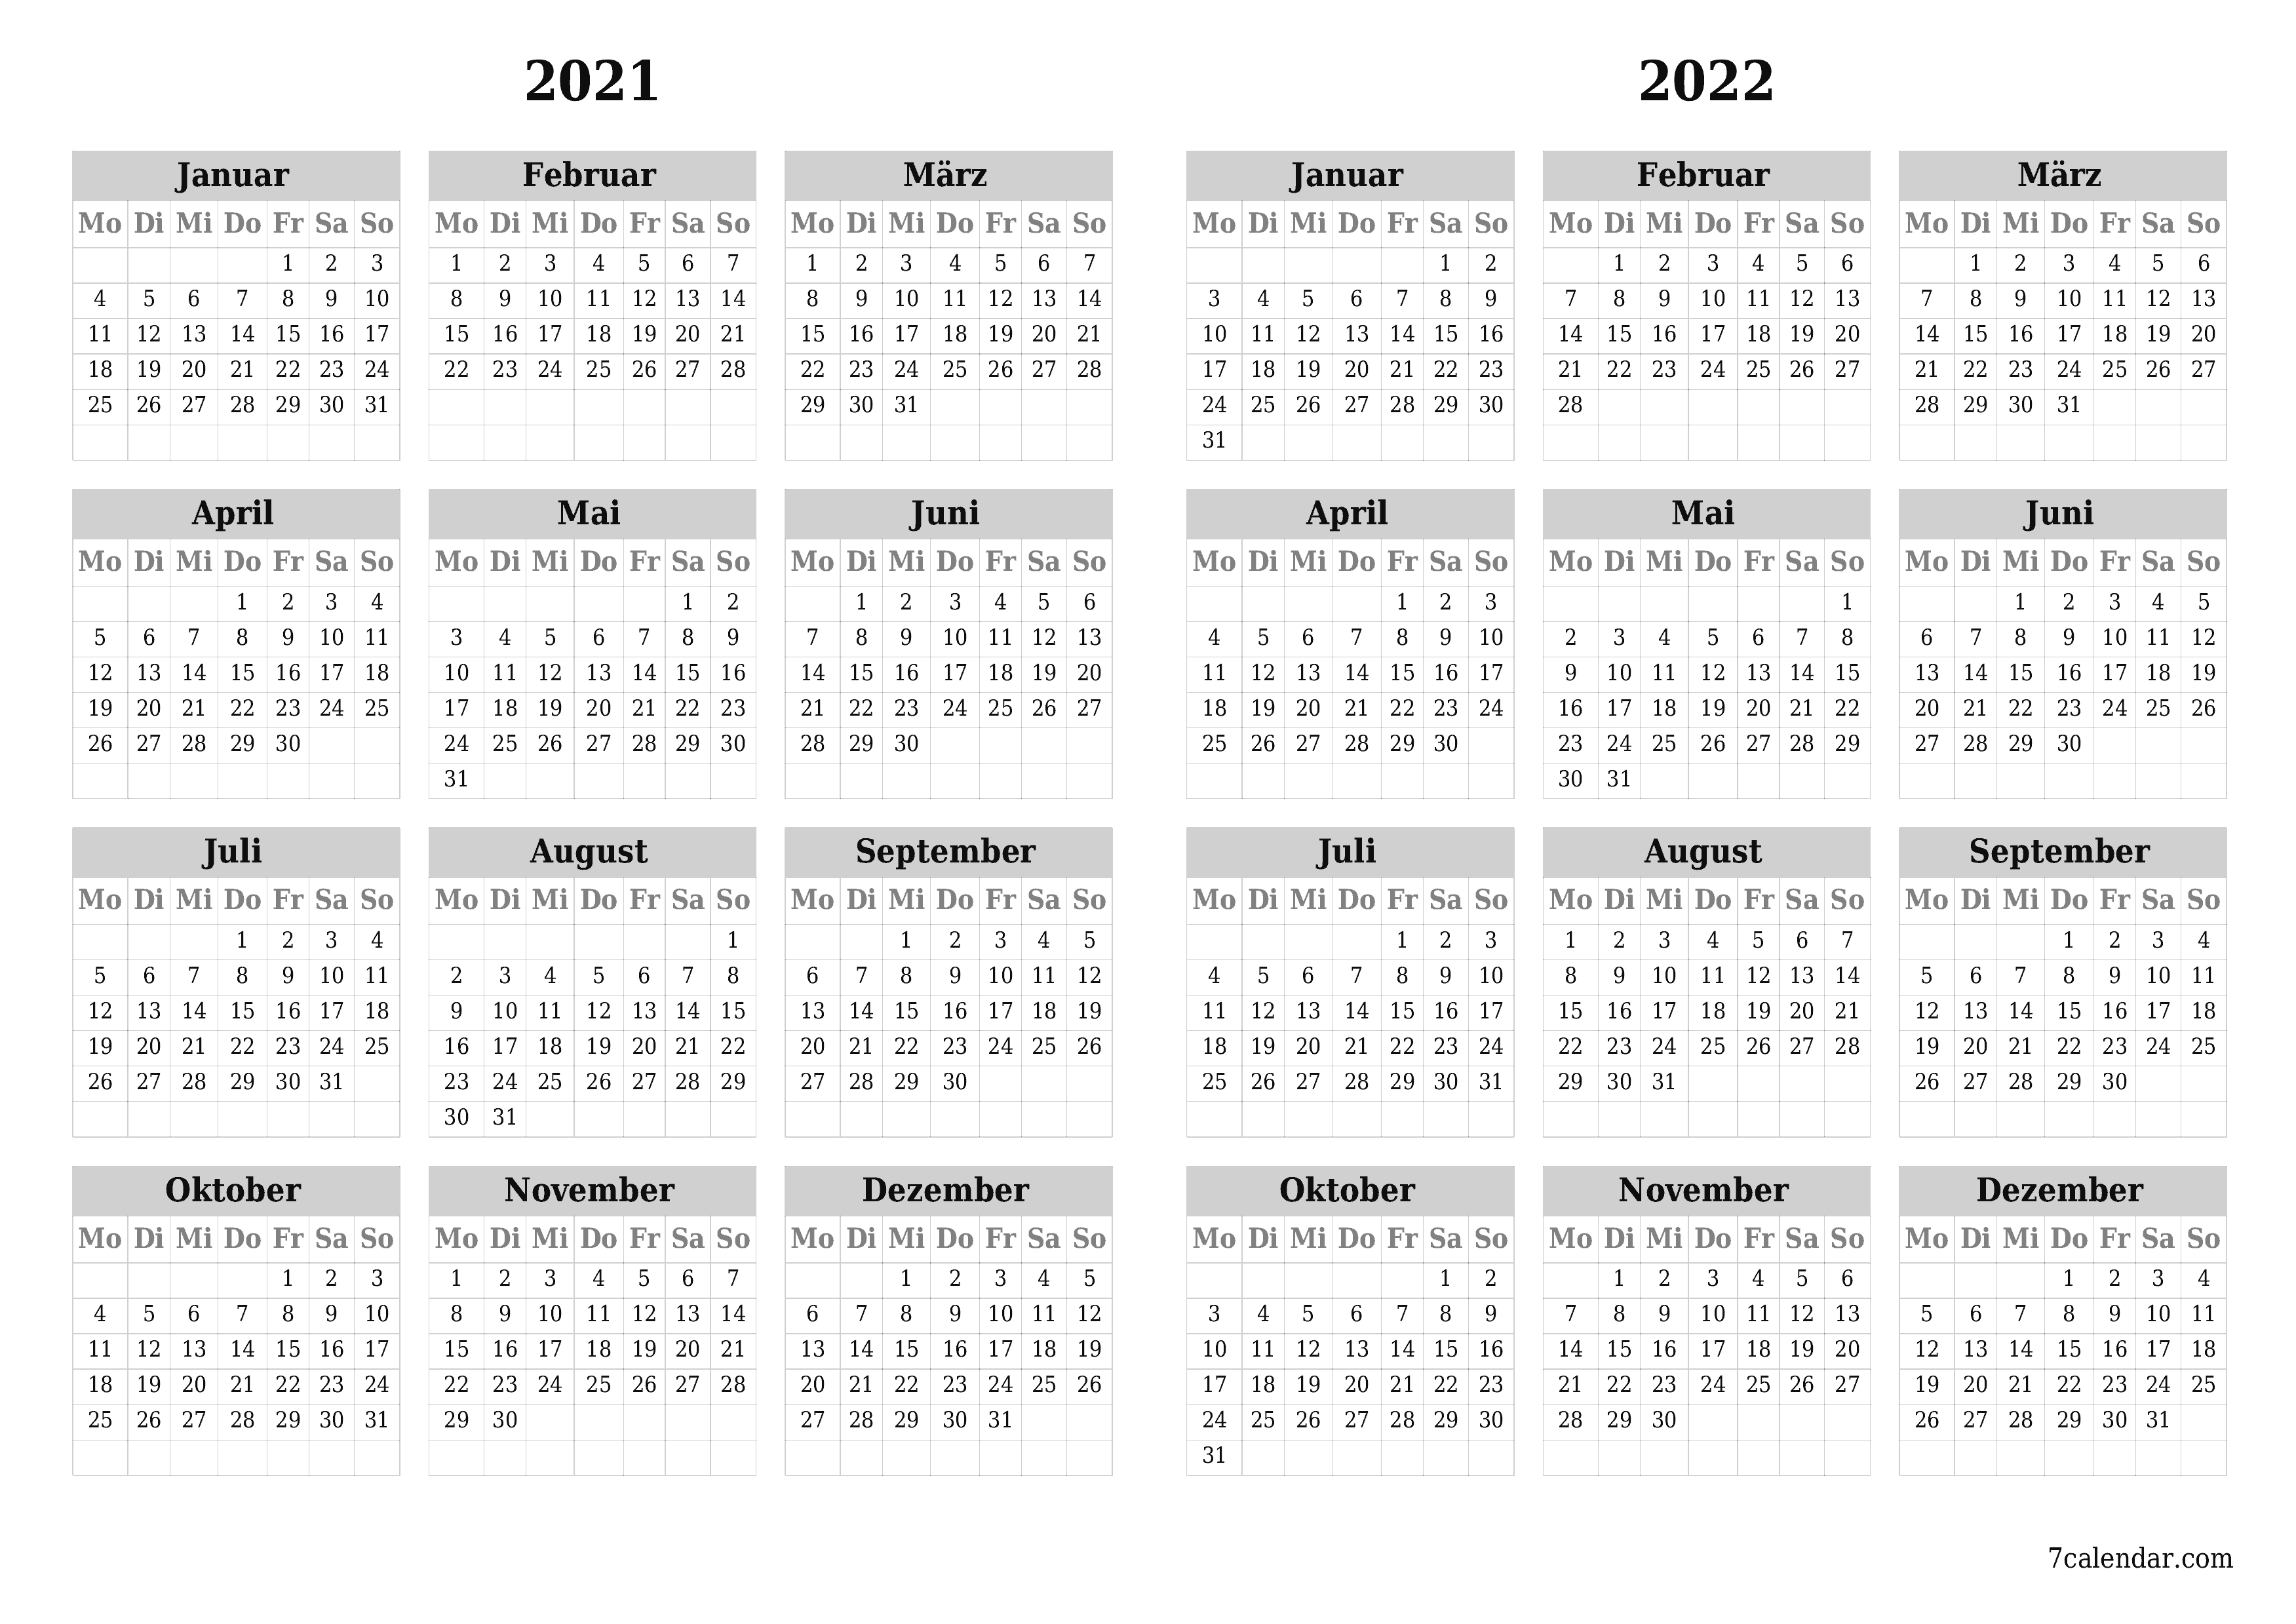  zum Ausdrucken Wandkalender vorlage kostenloser horizontal Jahreskalender Kalender Dezember (Dez) 2021